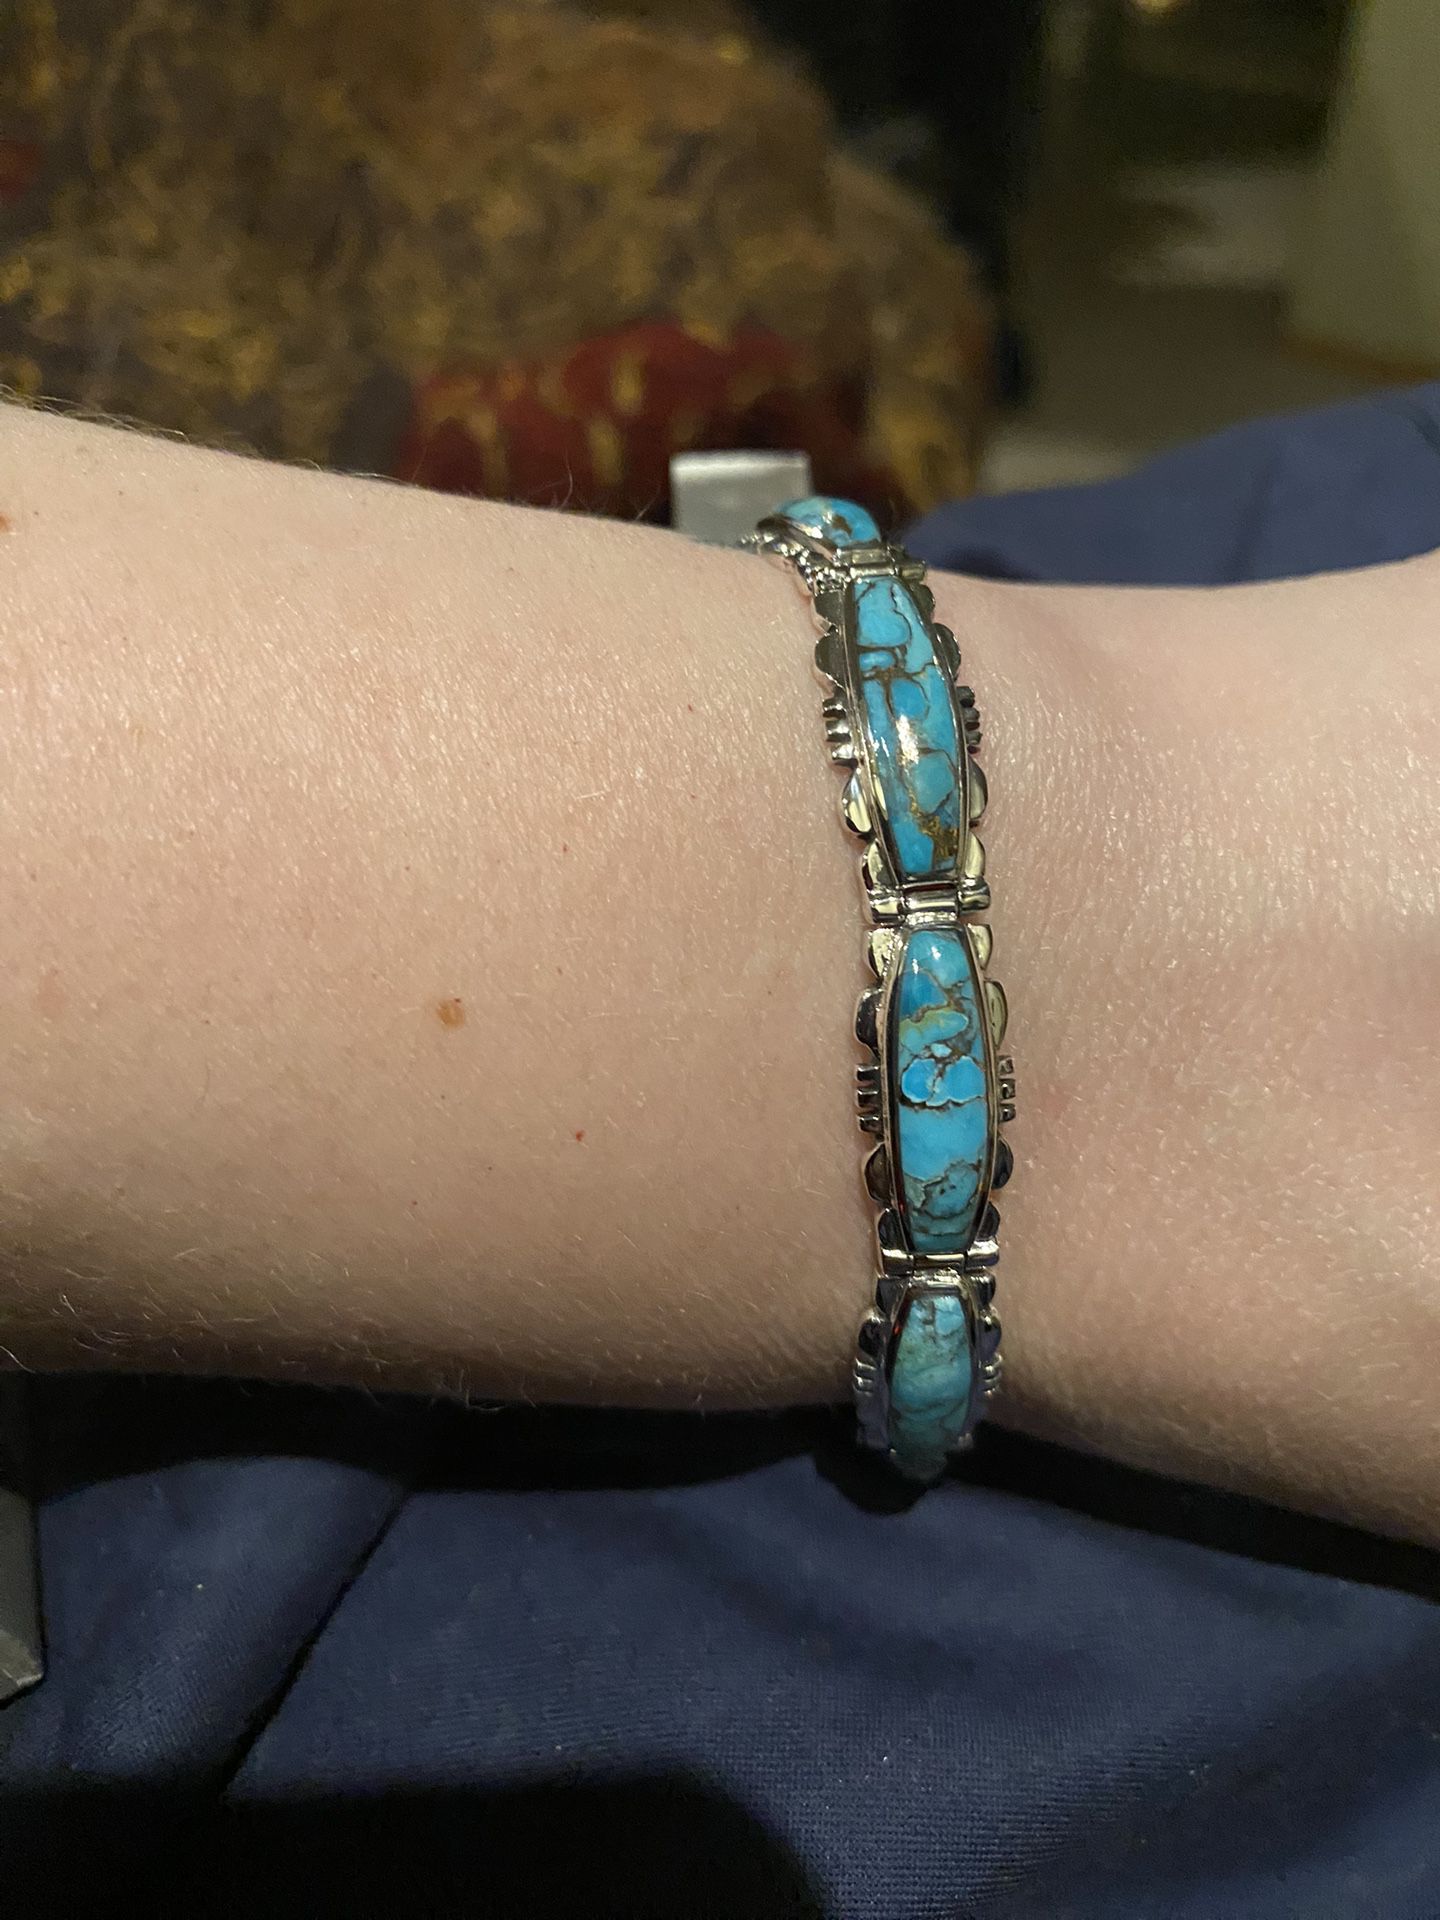 Beautiful Santa Fe Style Turquoise Bracelet - new!  